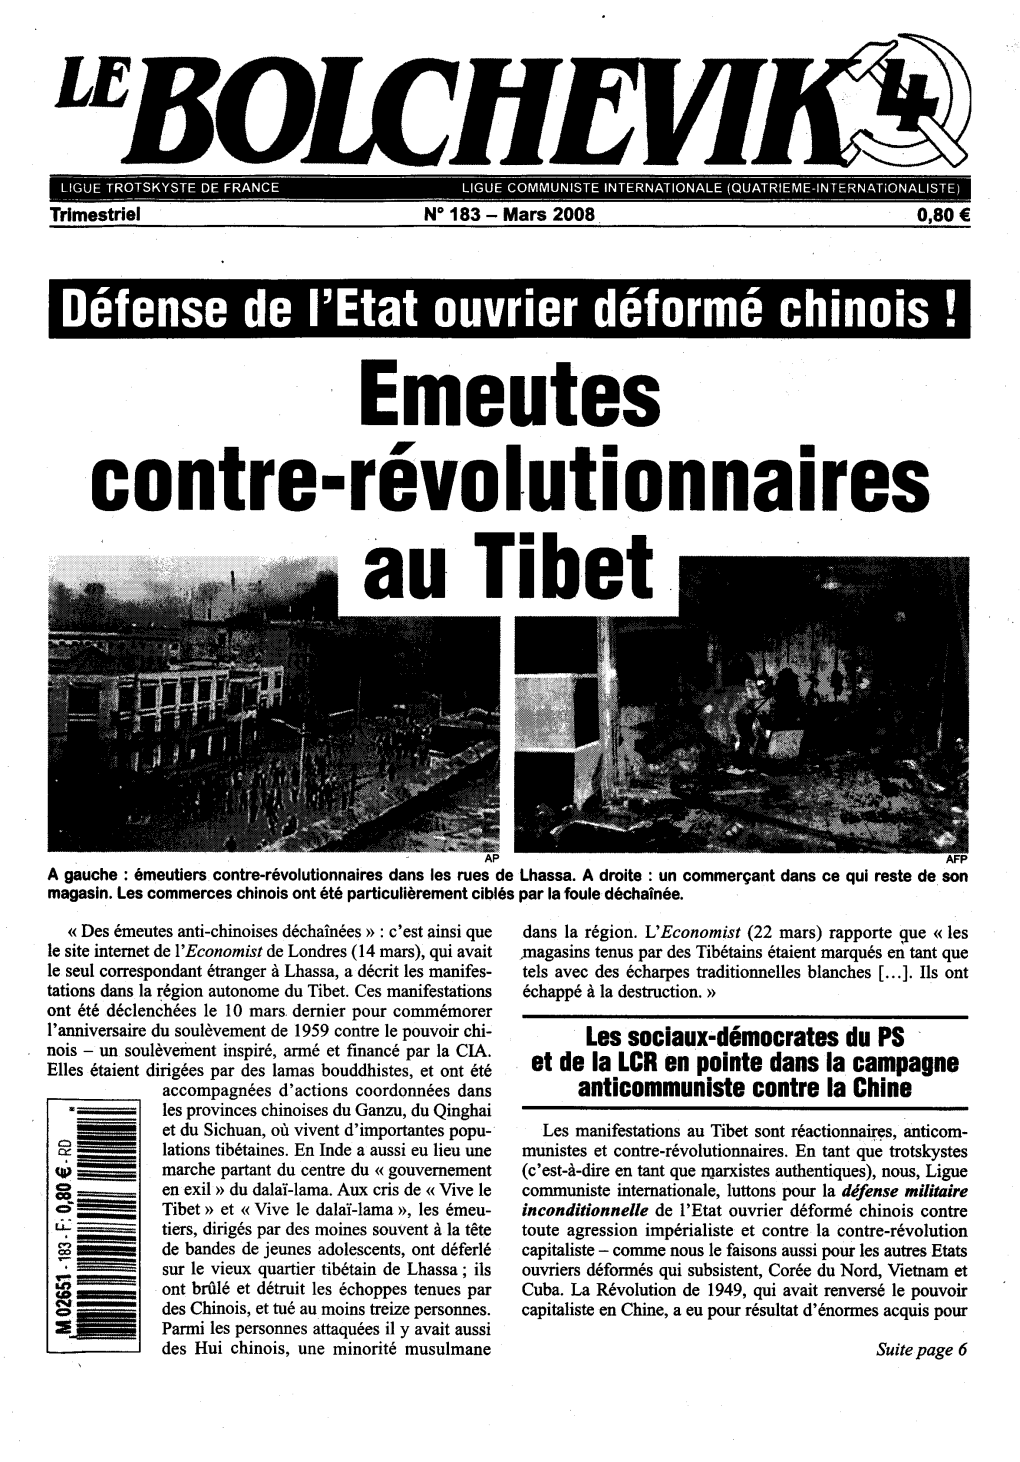 Emeutes Contre-Révolutionnaires Au Tibet